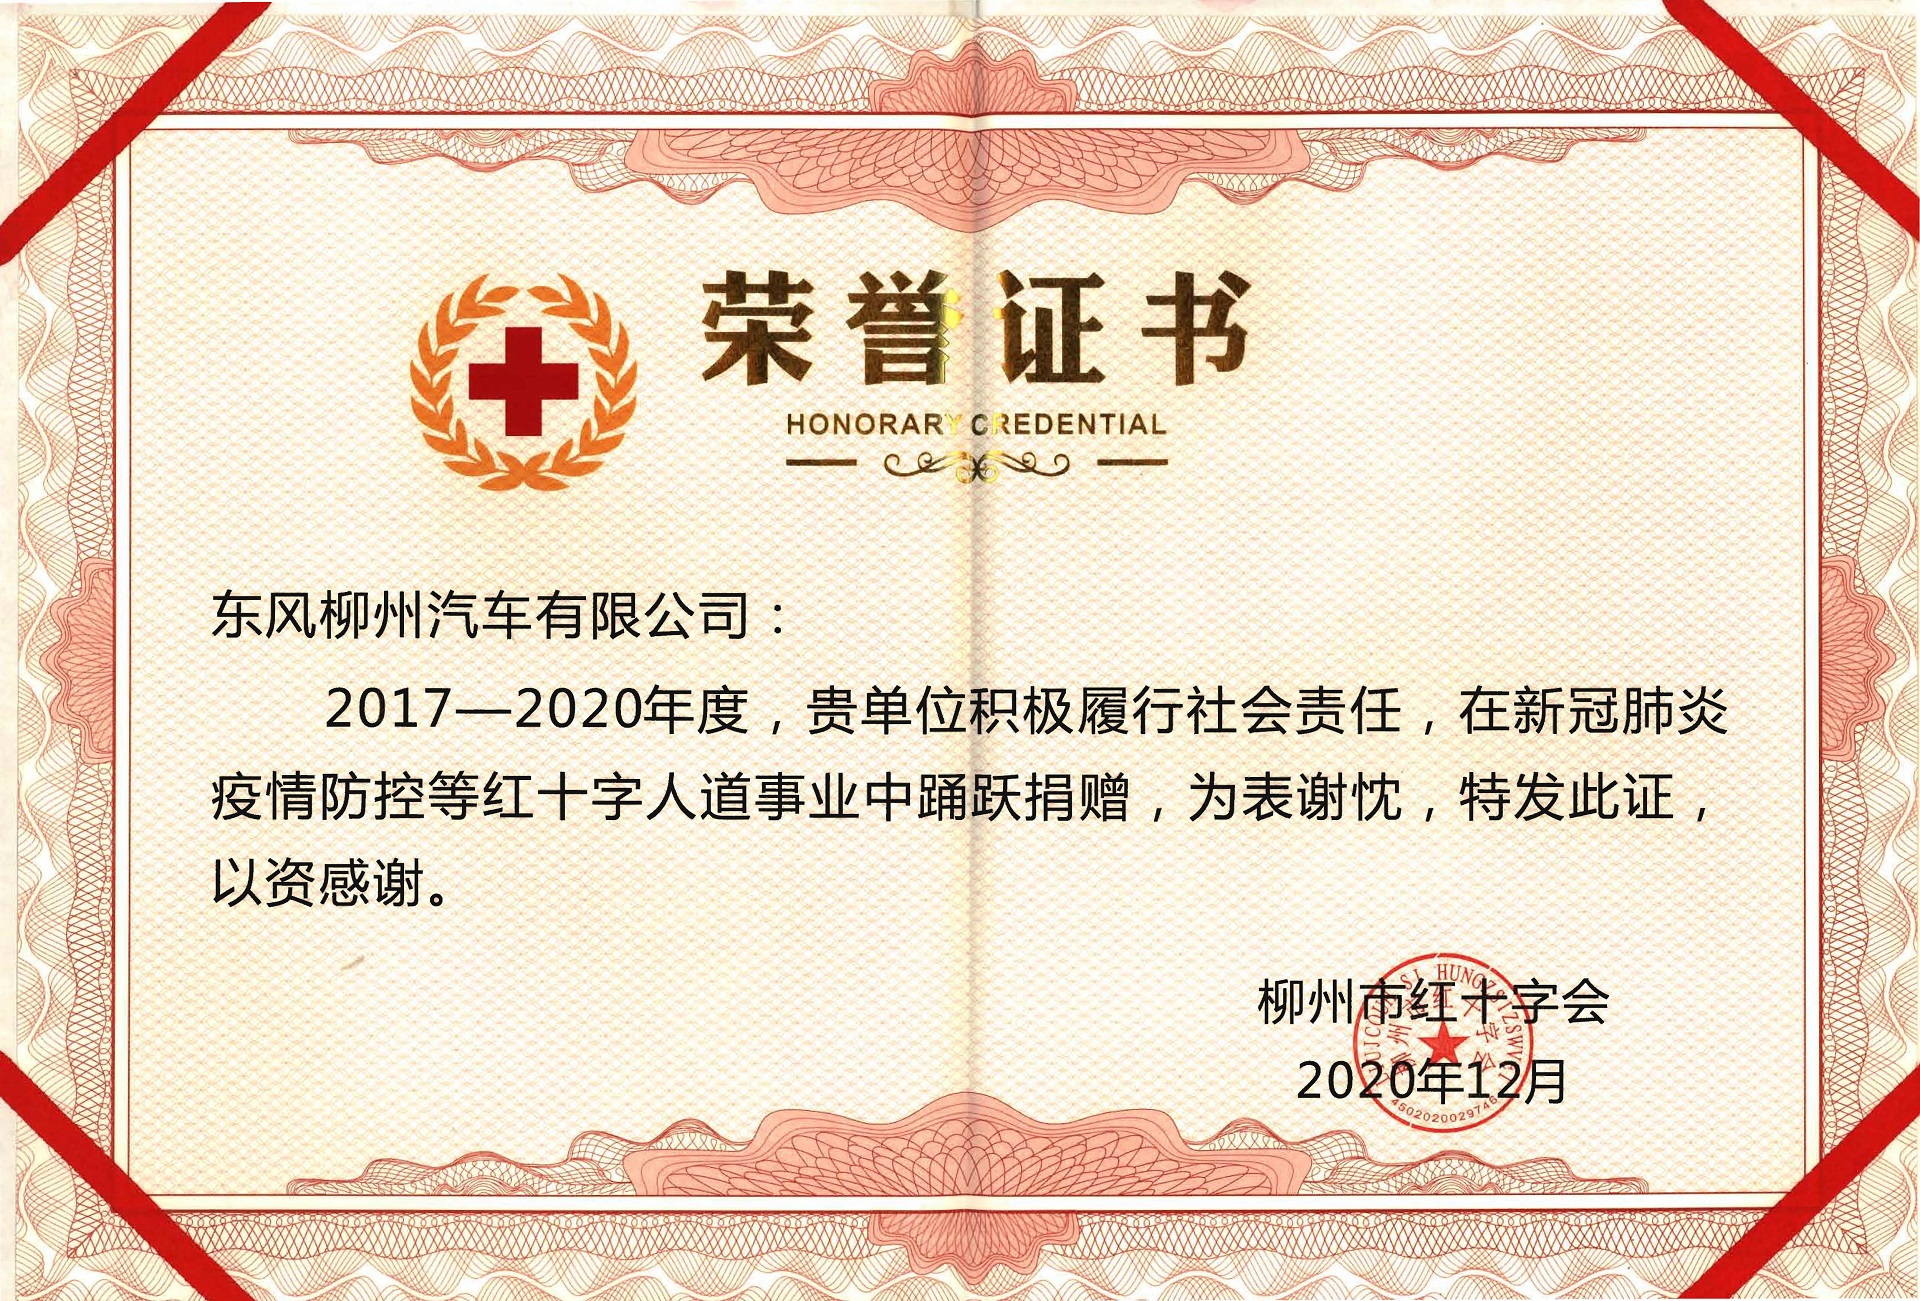 柳州红十字会事业奉献奖 